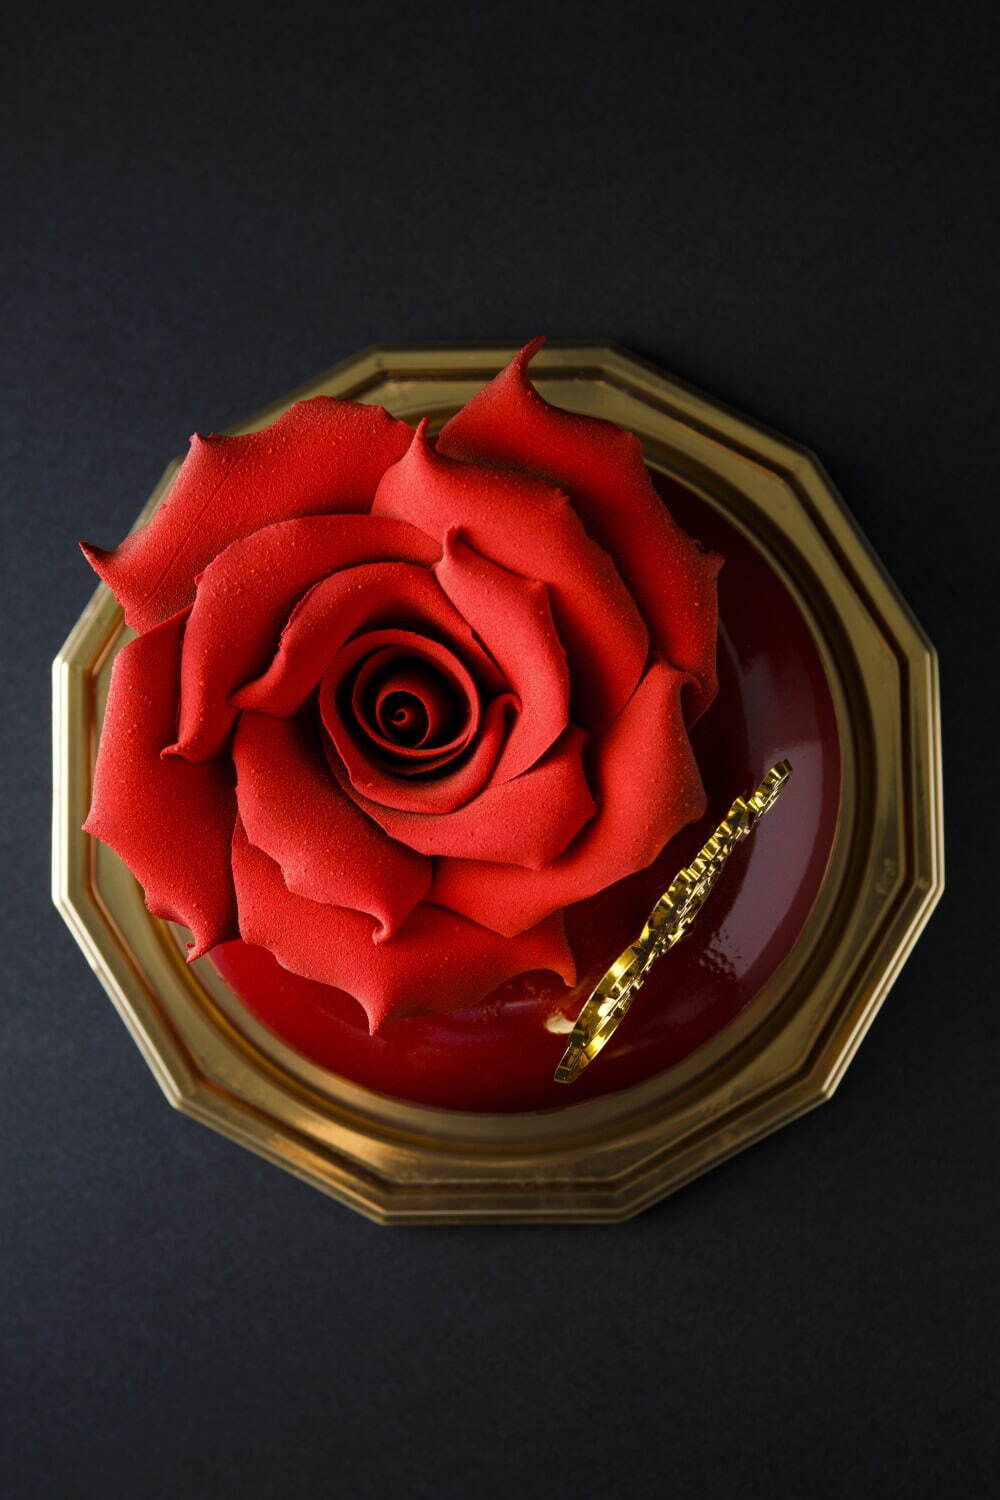 ハイアットリージェンシー横浜 - 薔薇のチョコ細工を飾ったケーキ